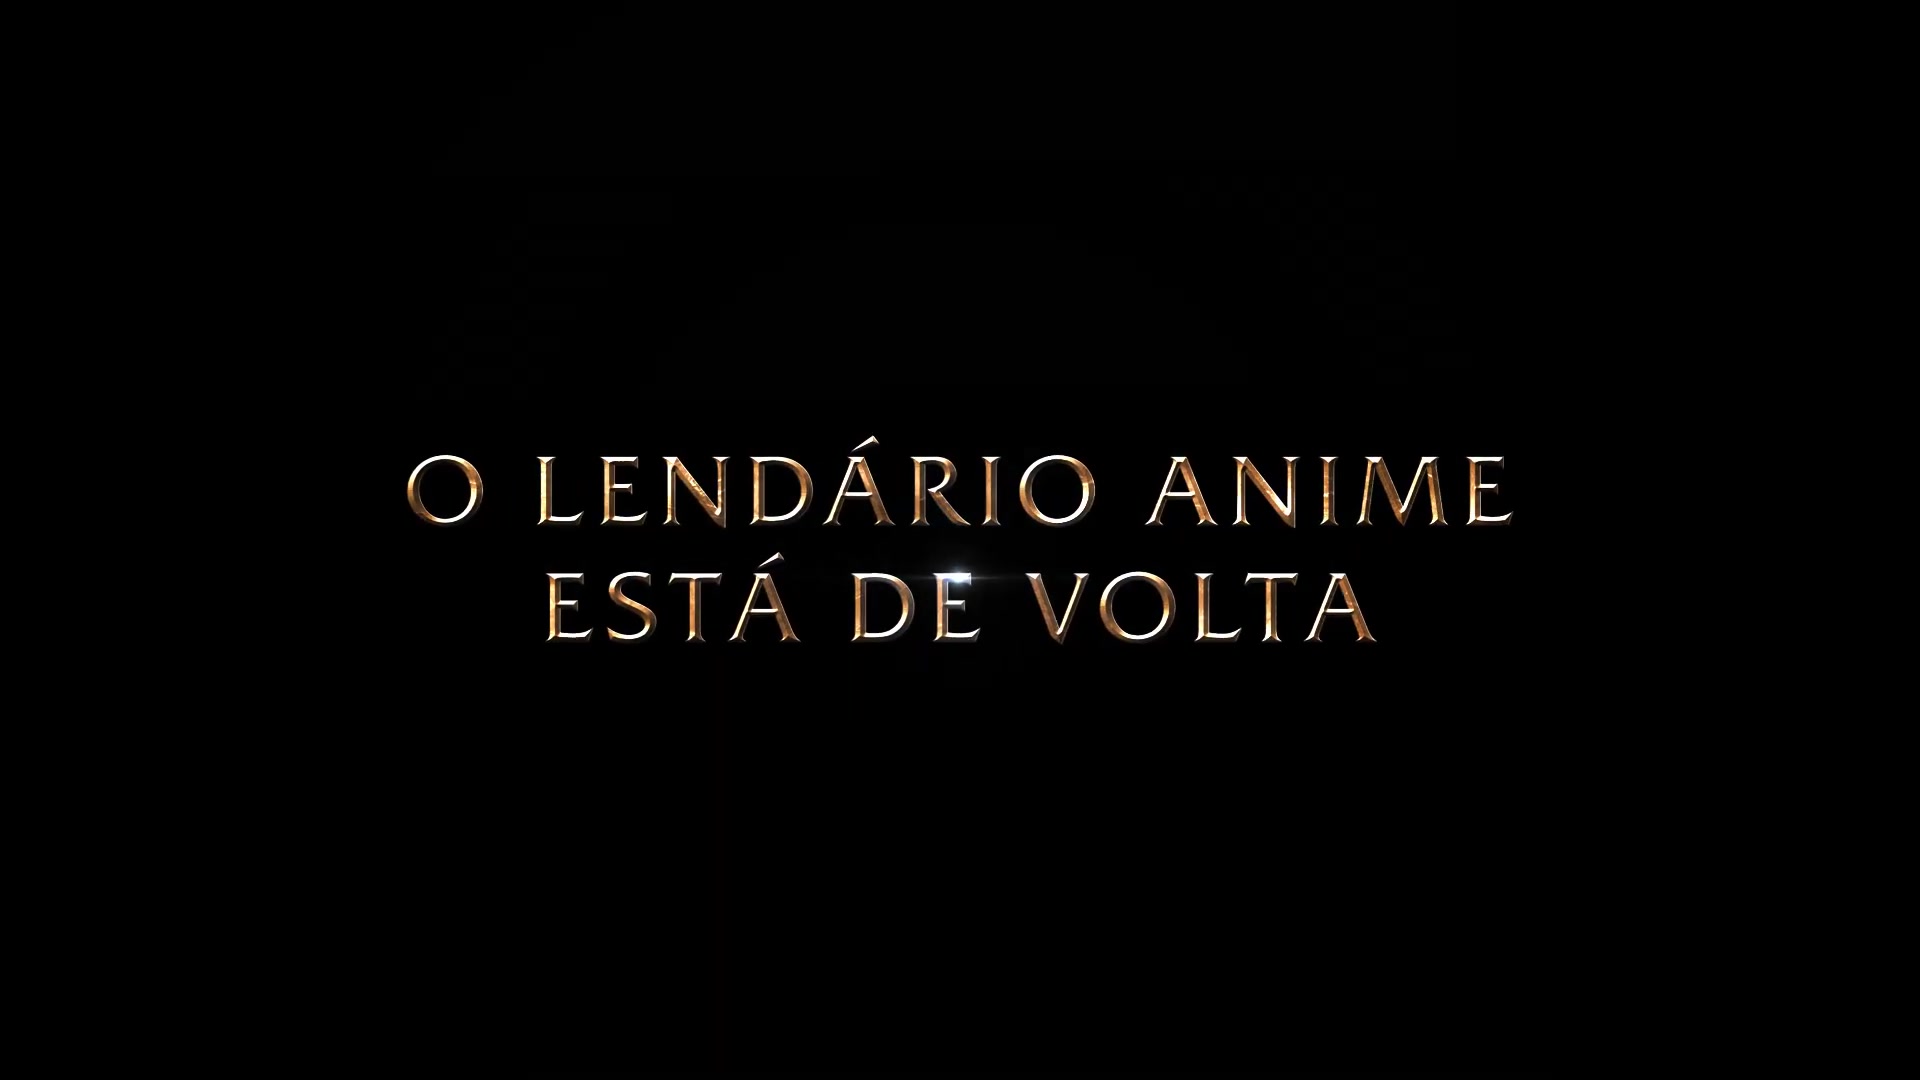 Eleve seu Cosmo! Toei Animation promete retorno de Cavaleiros do Zodíaco à  TV em 2017 